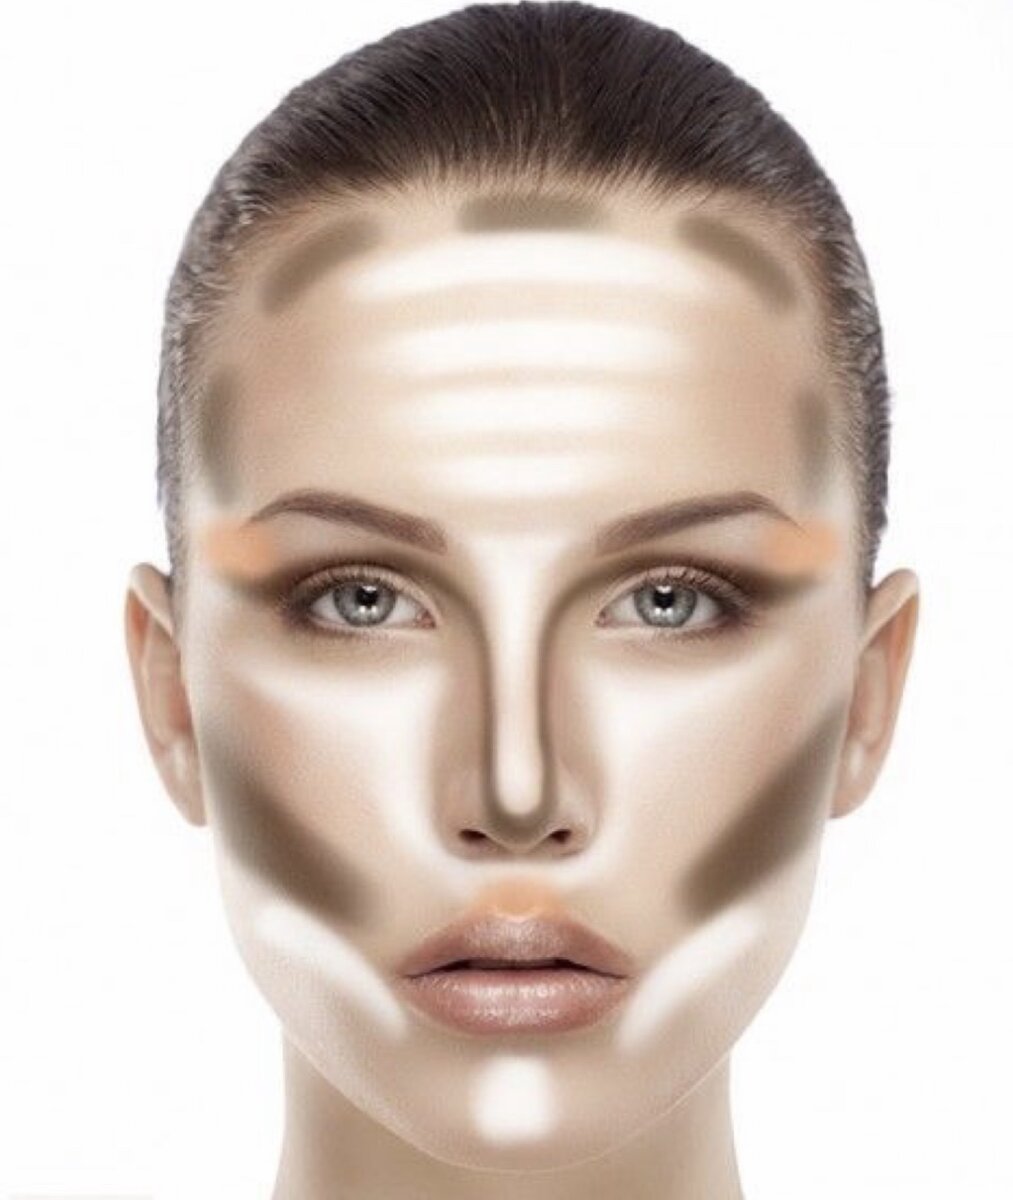 Всем привет!
Скульптор-это косметический продукт, которым мы создаём тени на лице.
То есть им мы можем сделать уже нос, прорисовать красивые скулы, углубить складку верхнего века.
Зависит от типа лица.